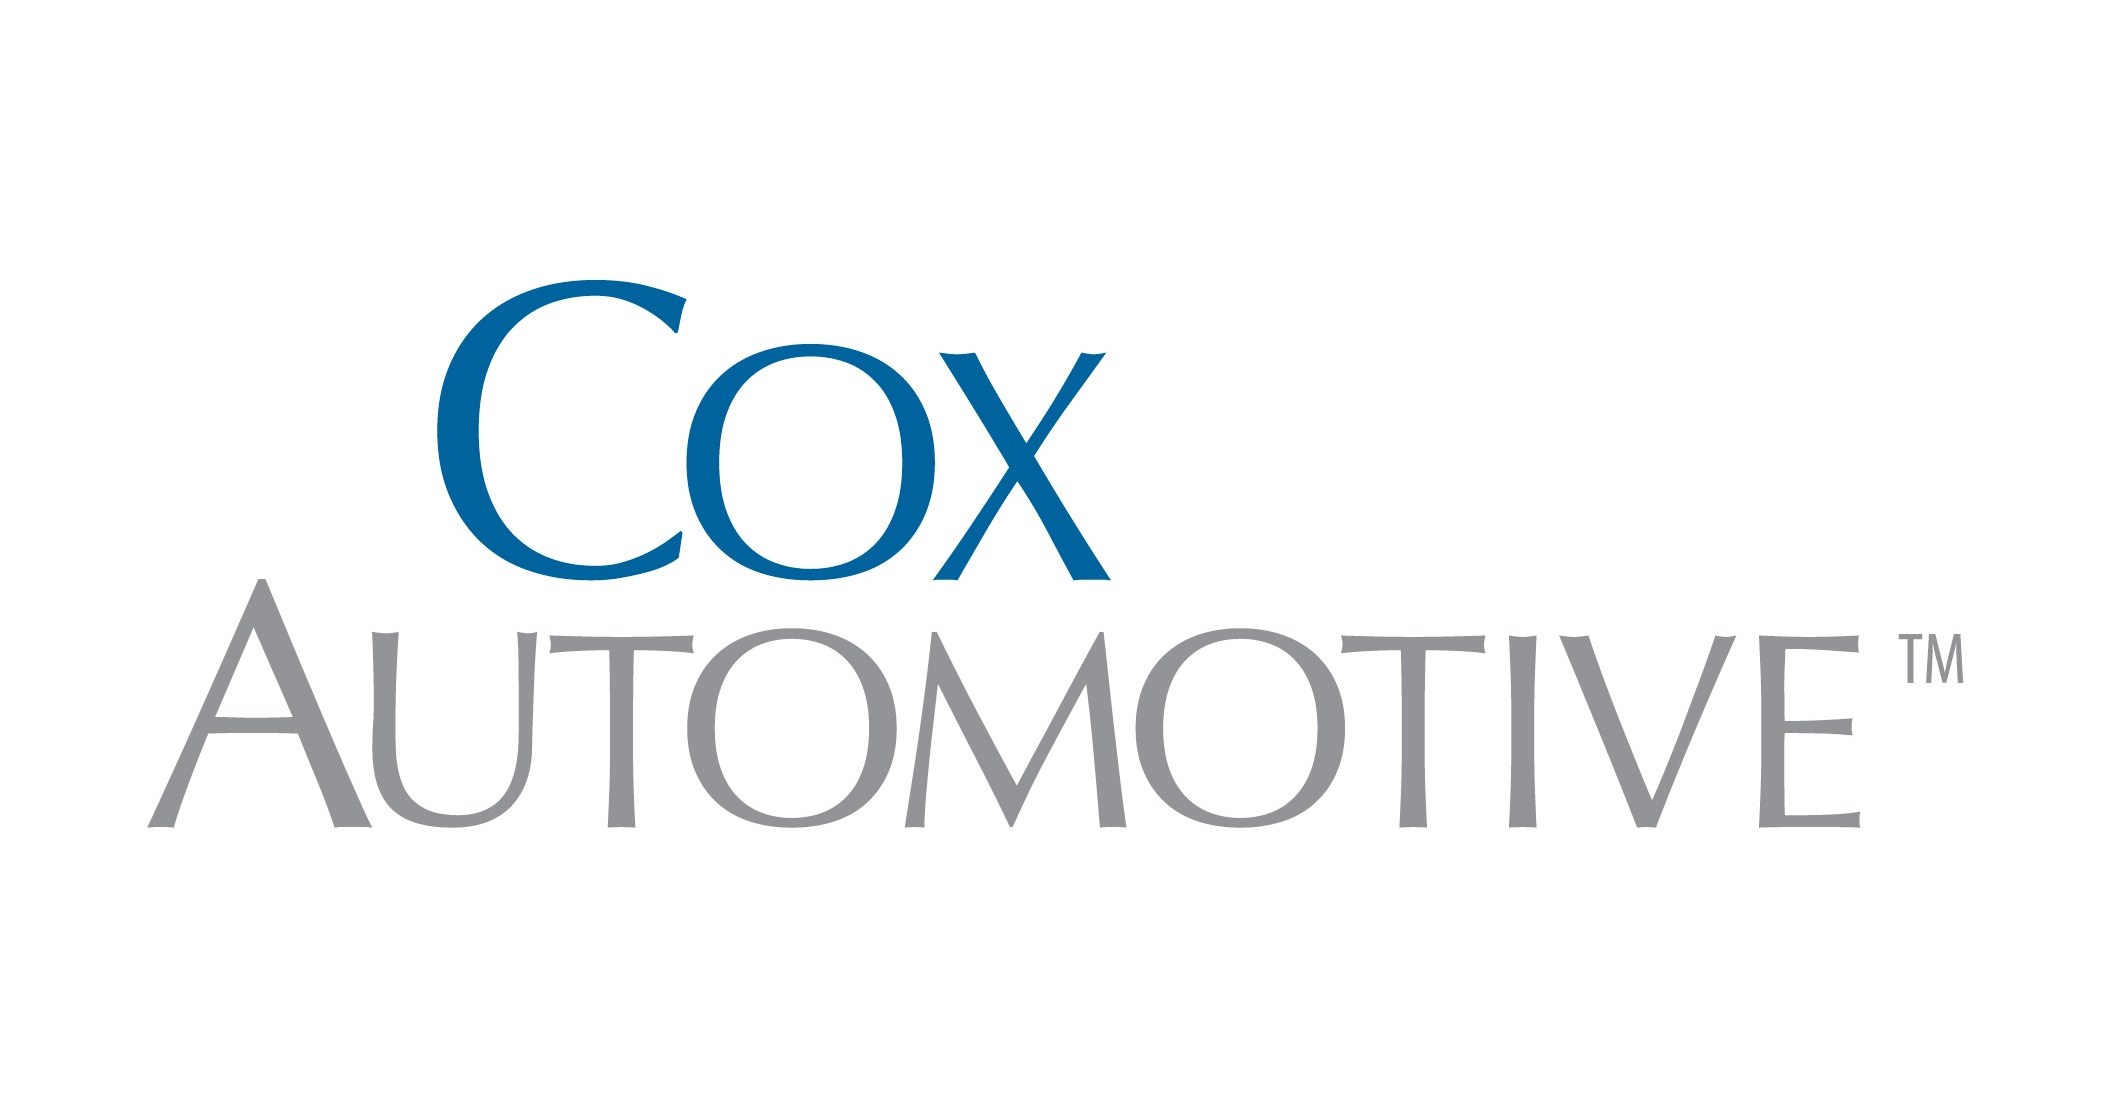 Logo Cox Automotive Brand Font Vector Graphics Png Favpng Bsbmtnjytsf5wrztas3fxlfgt